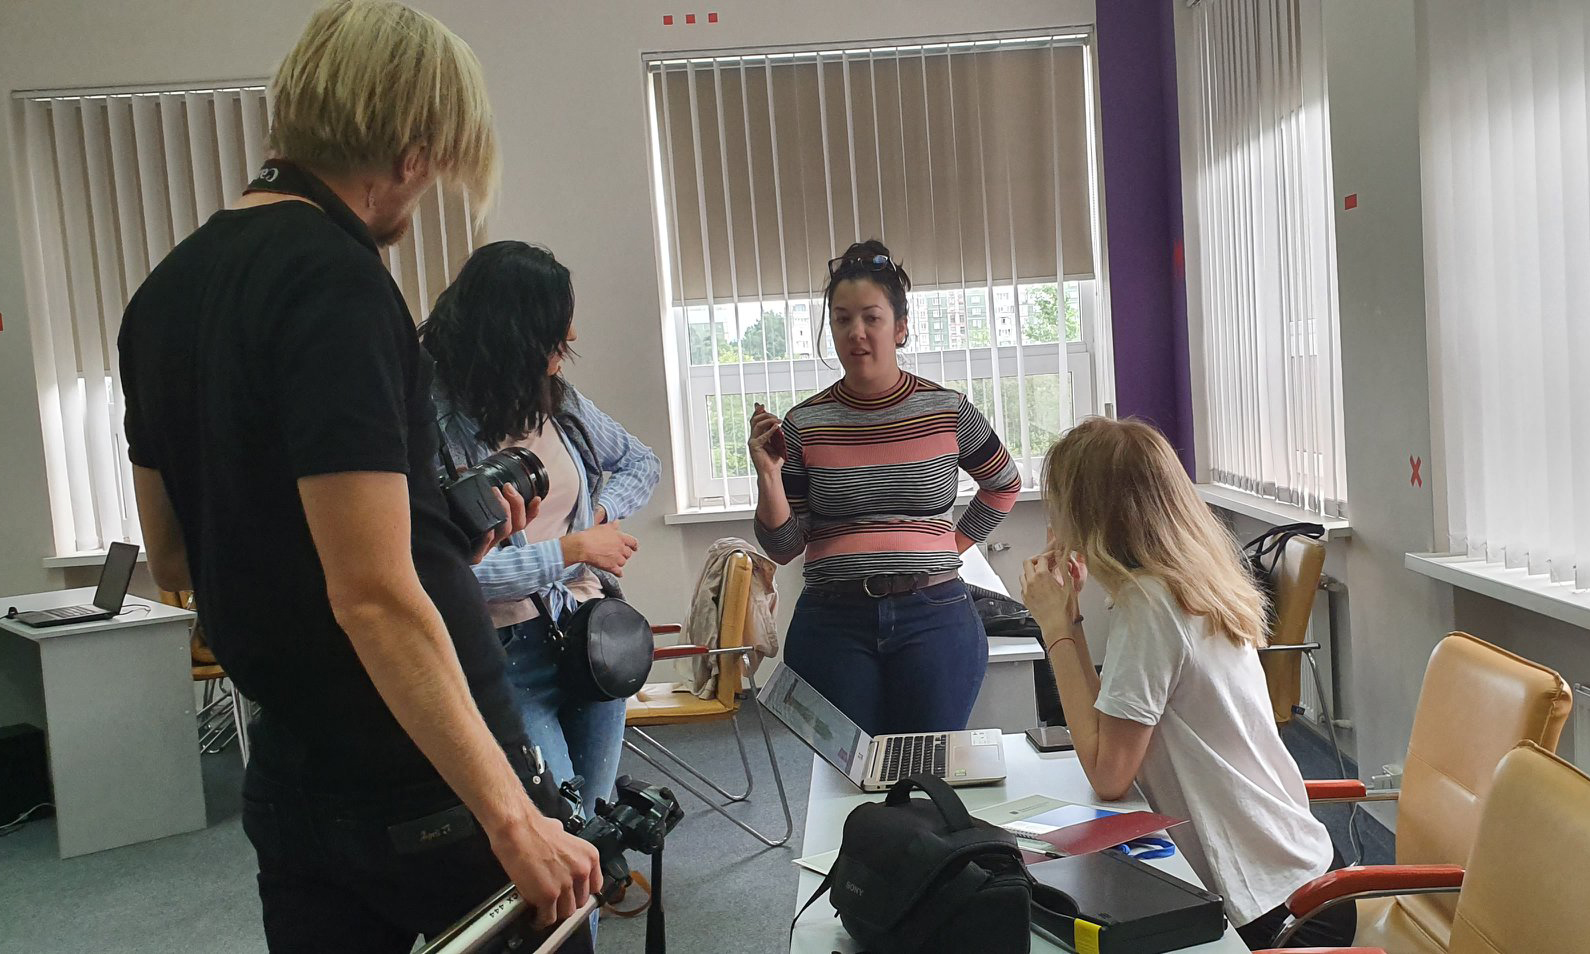 TeilnehmerInnen der International School of Multimedia Journalism 2019 in einem Klassenzimmer diskutieren während der Projektarbeit.